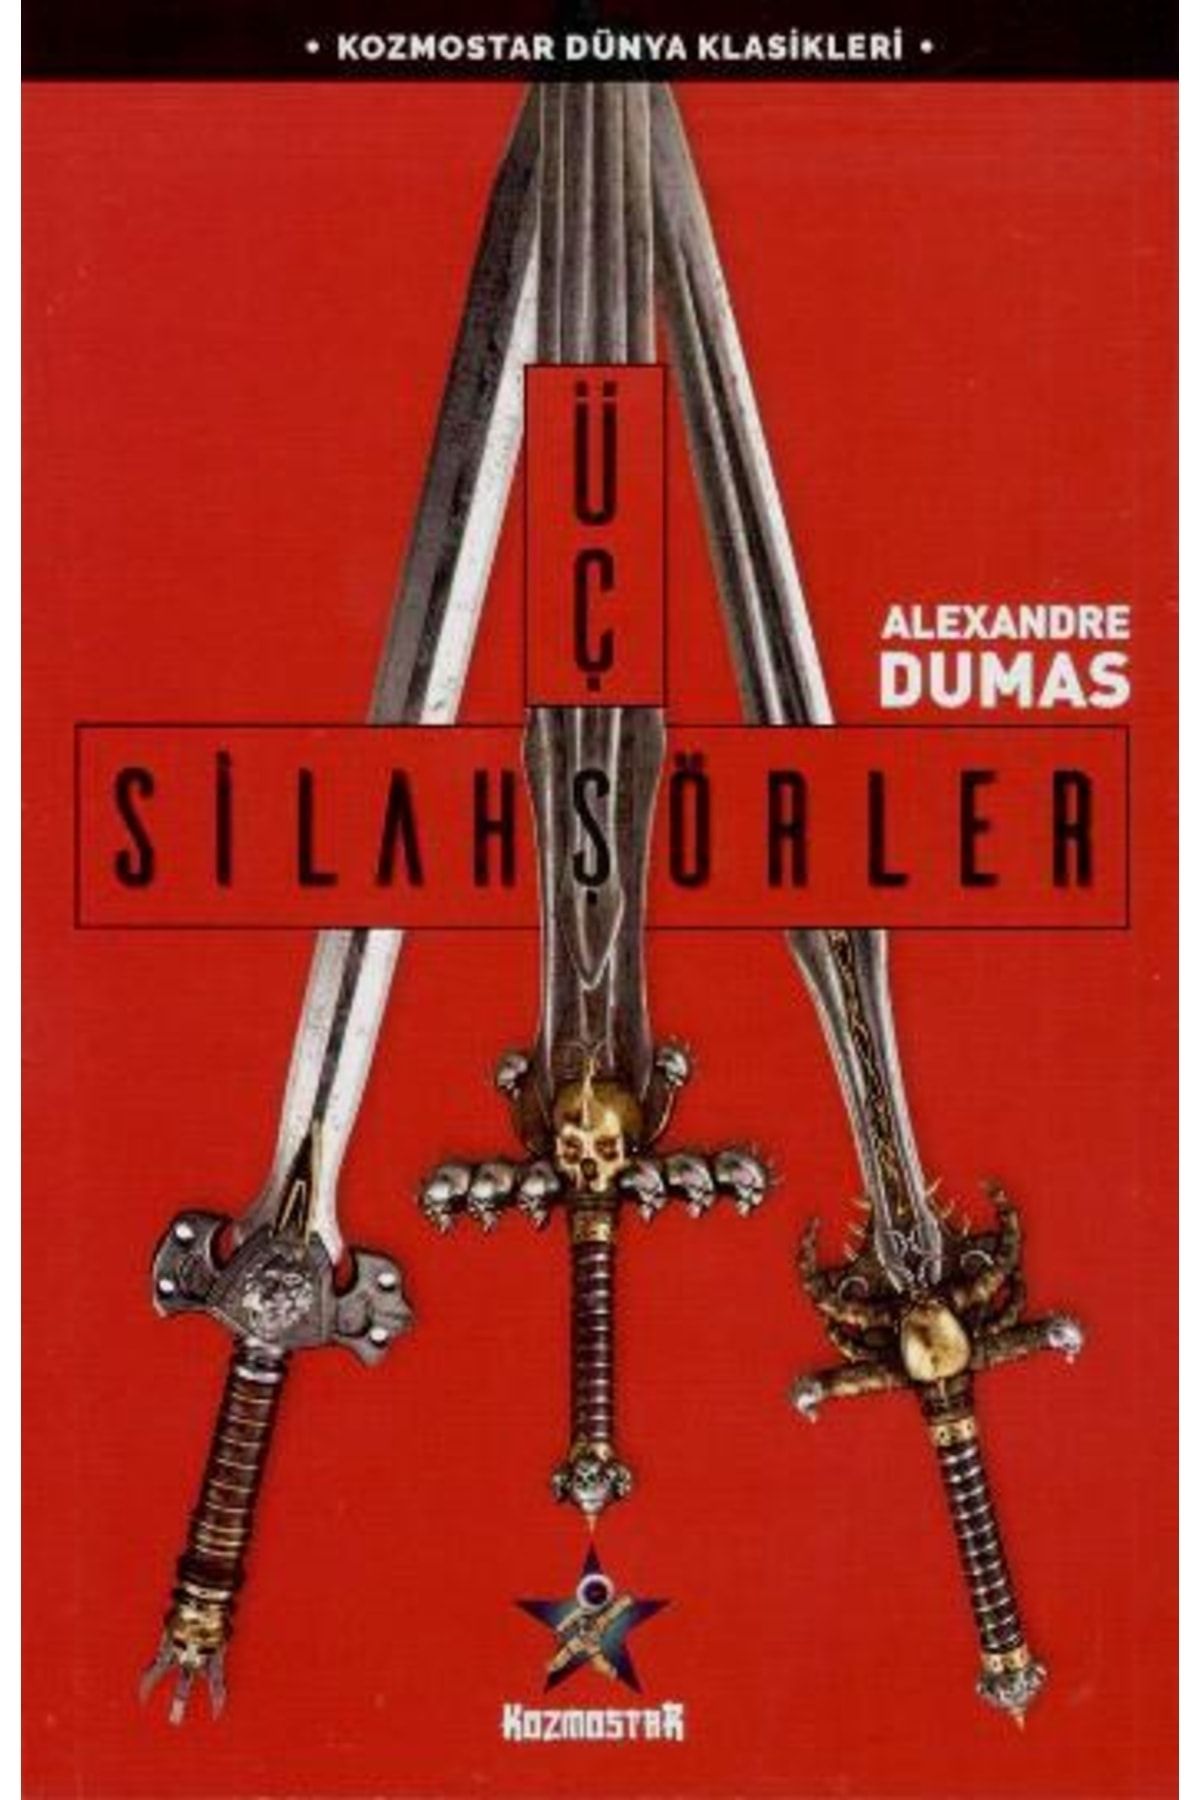 Kozmostar Üç Silahşörler Alexandre Dumas